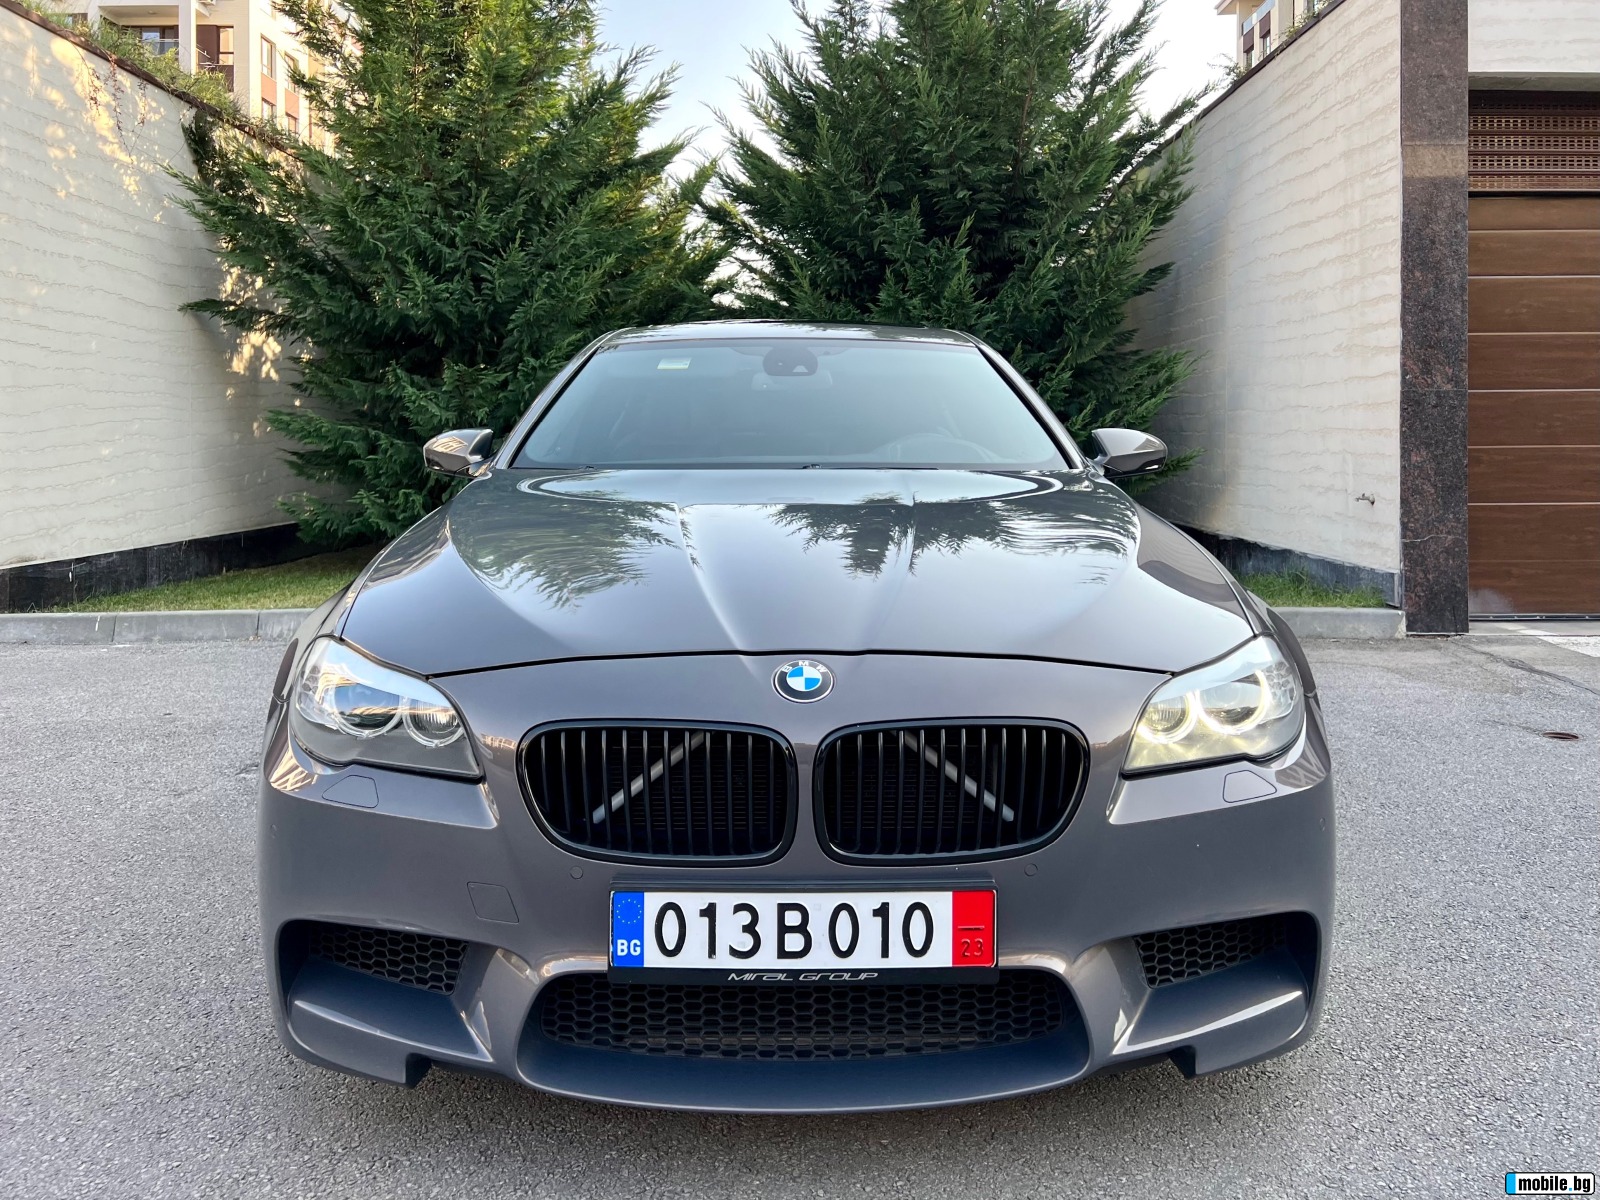 BMW M5 Champagne Quartz Alkantara Obduhvane Podgrev  | Mobile.bg   2